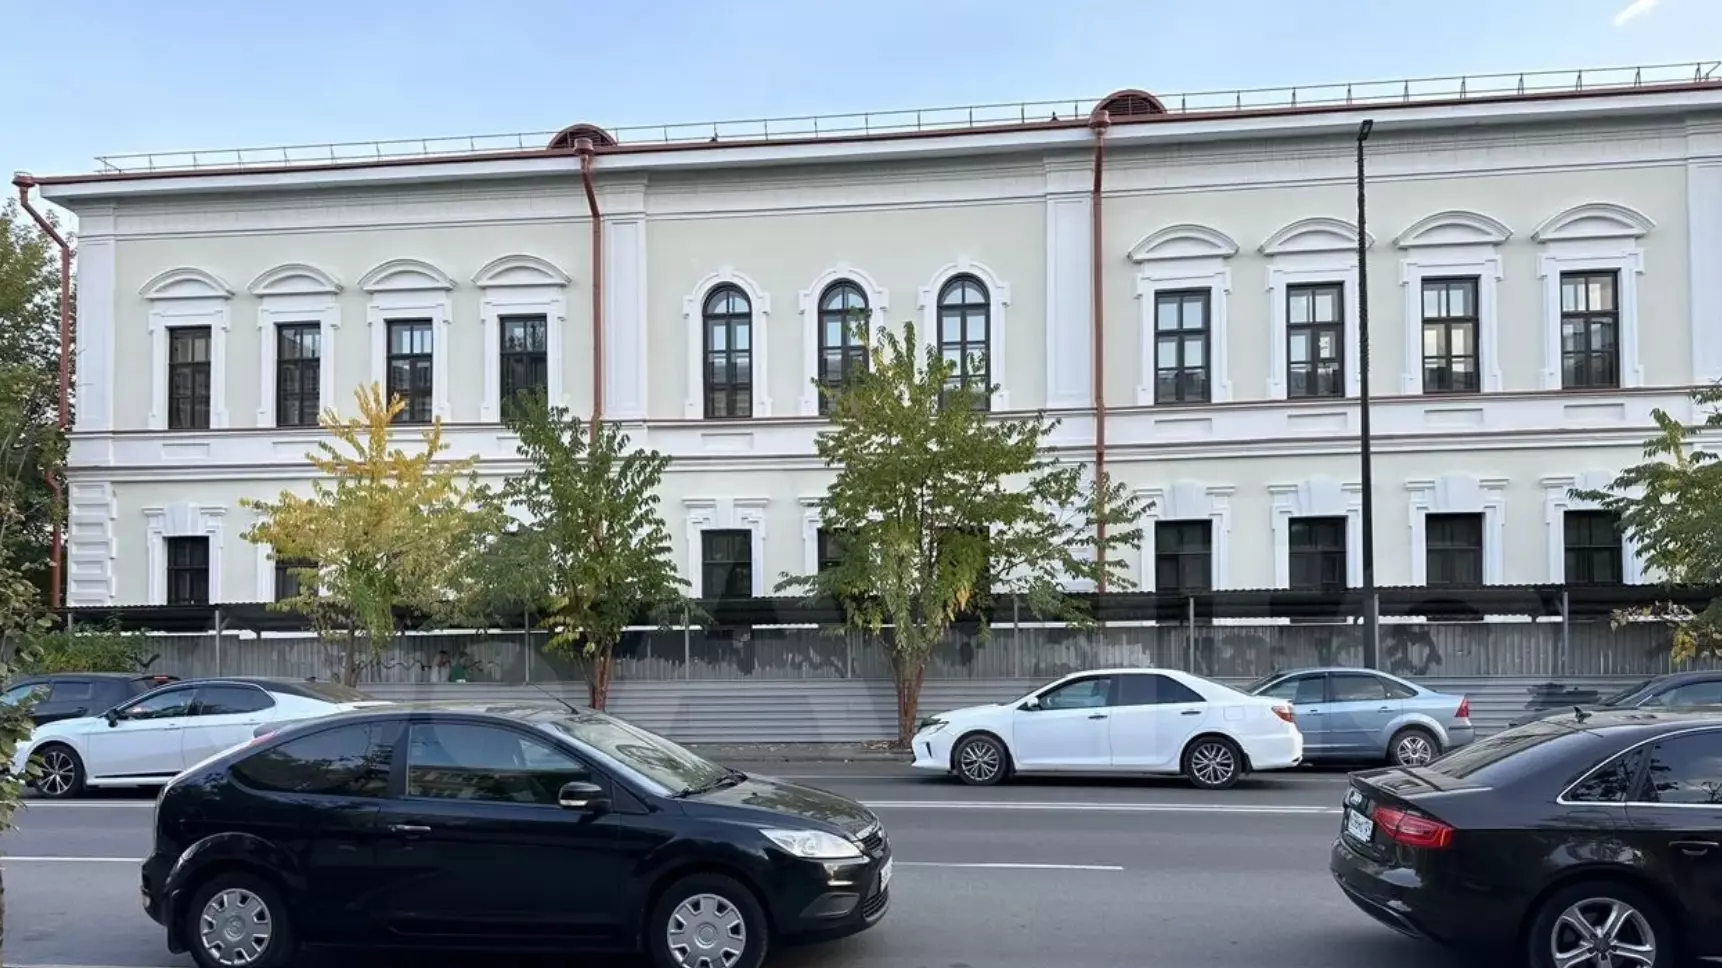 Одна из богатейших семей края продает старинный дом в Красноярске за 430 млн